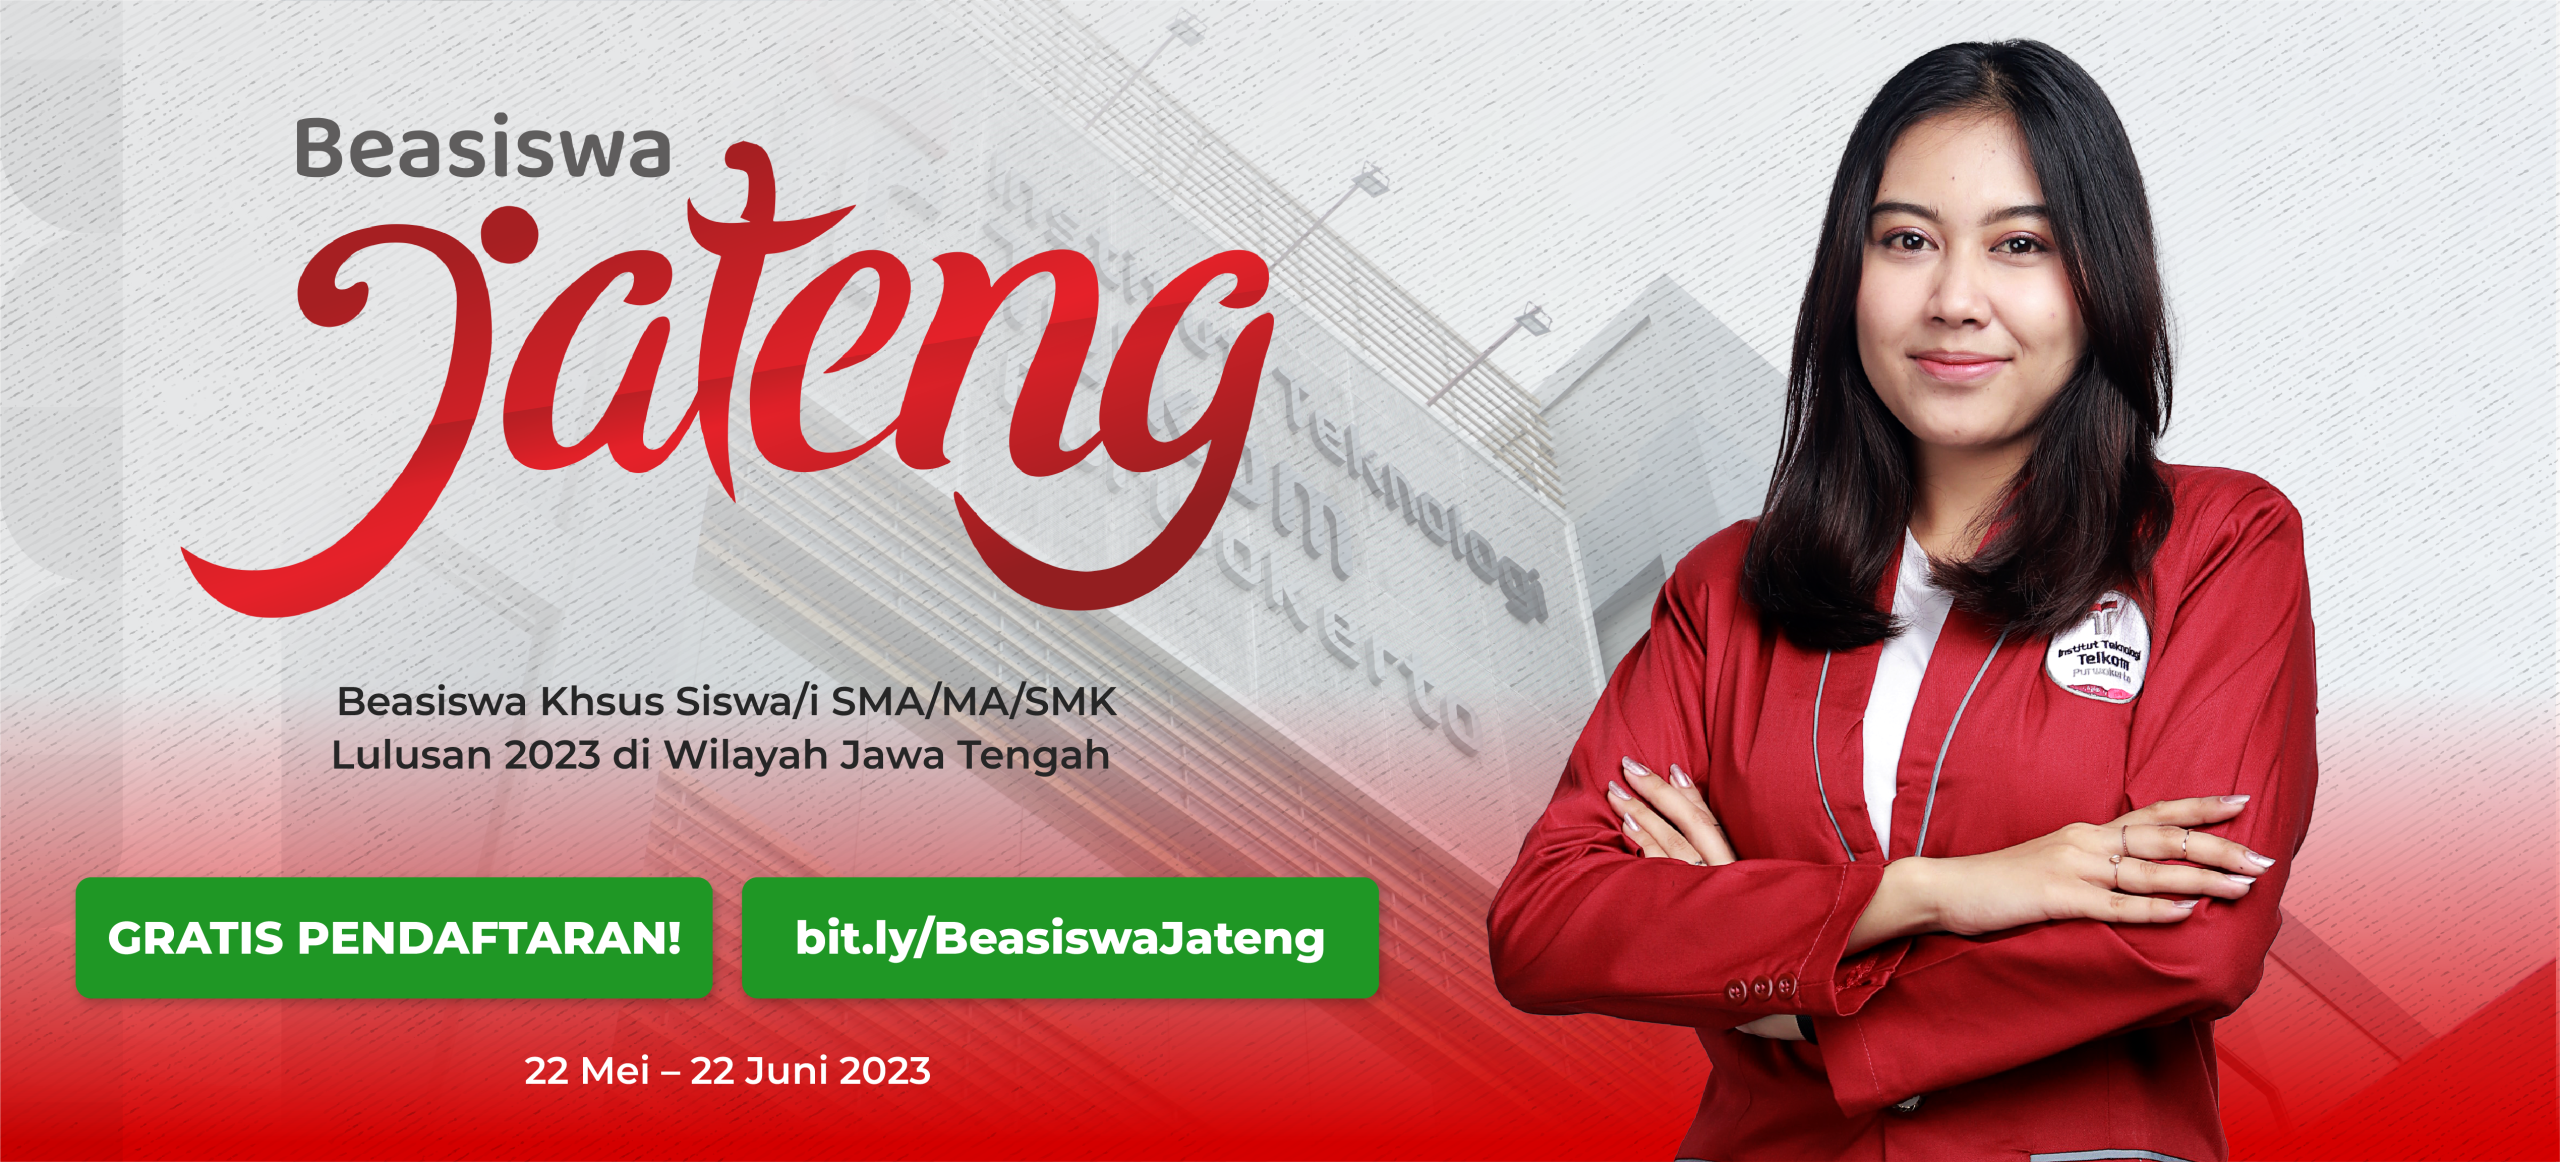 Banner Web Beasiswa Jateng